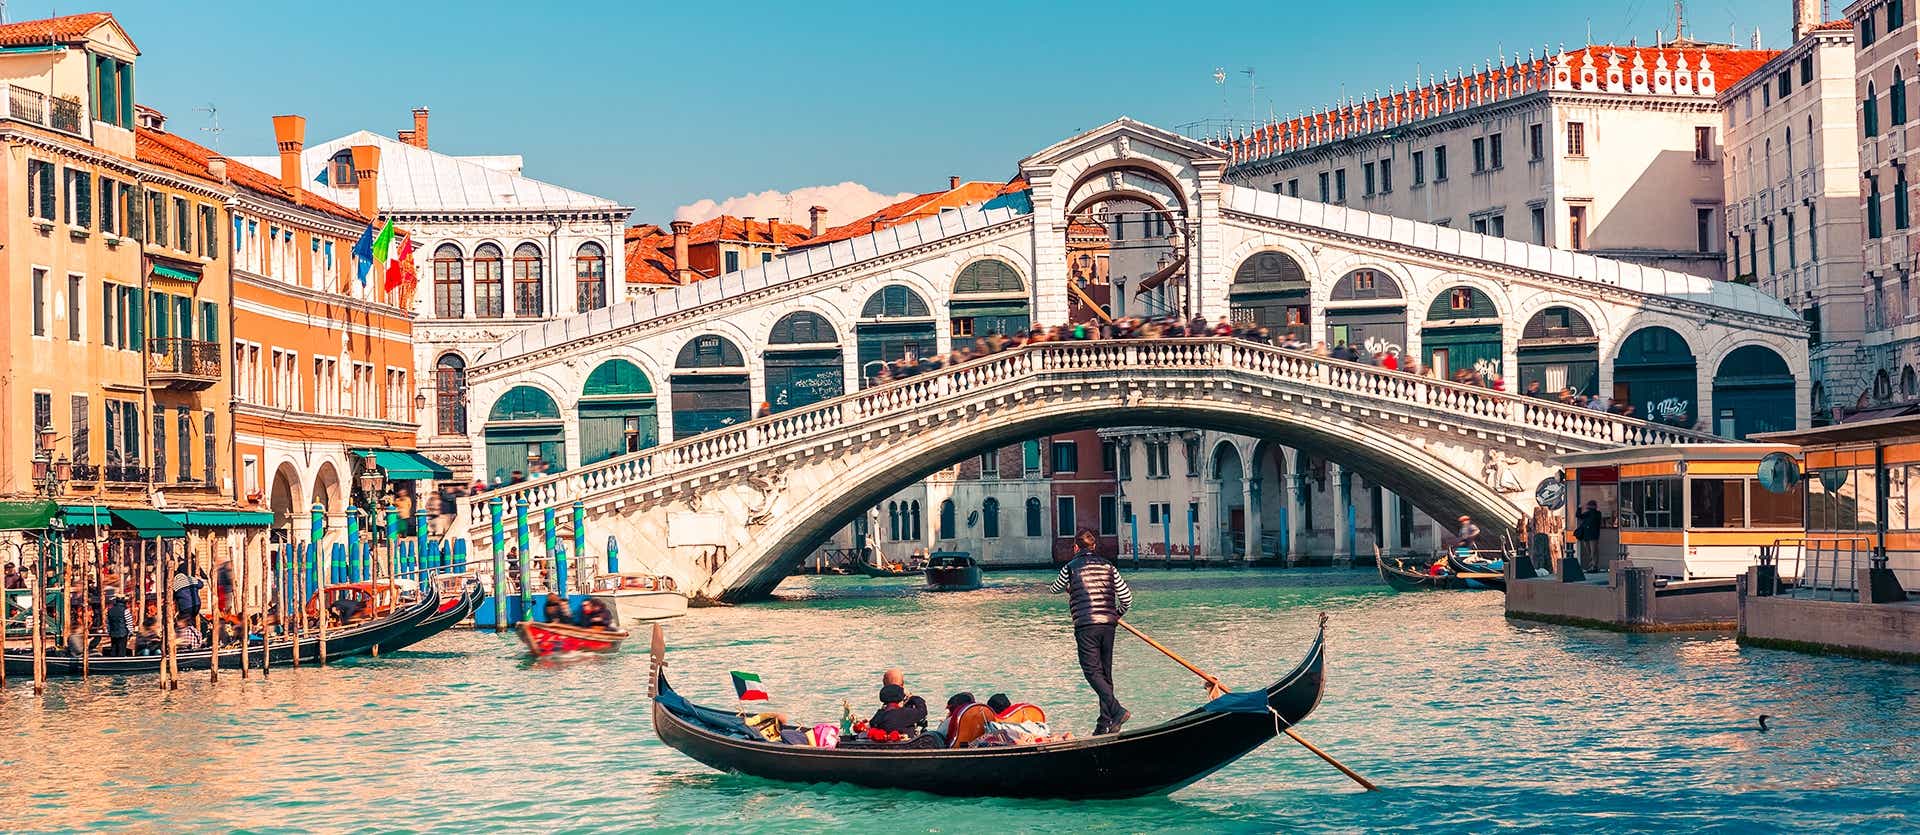 Rialto Bridge <span class="iconos separador"></span> Venice